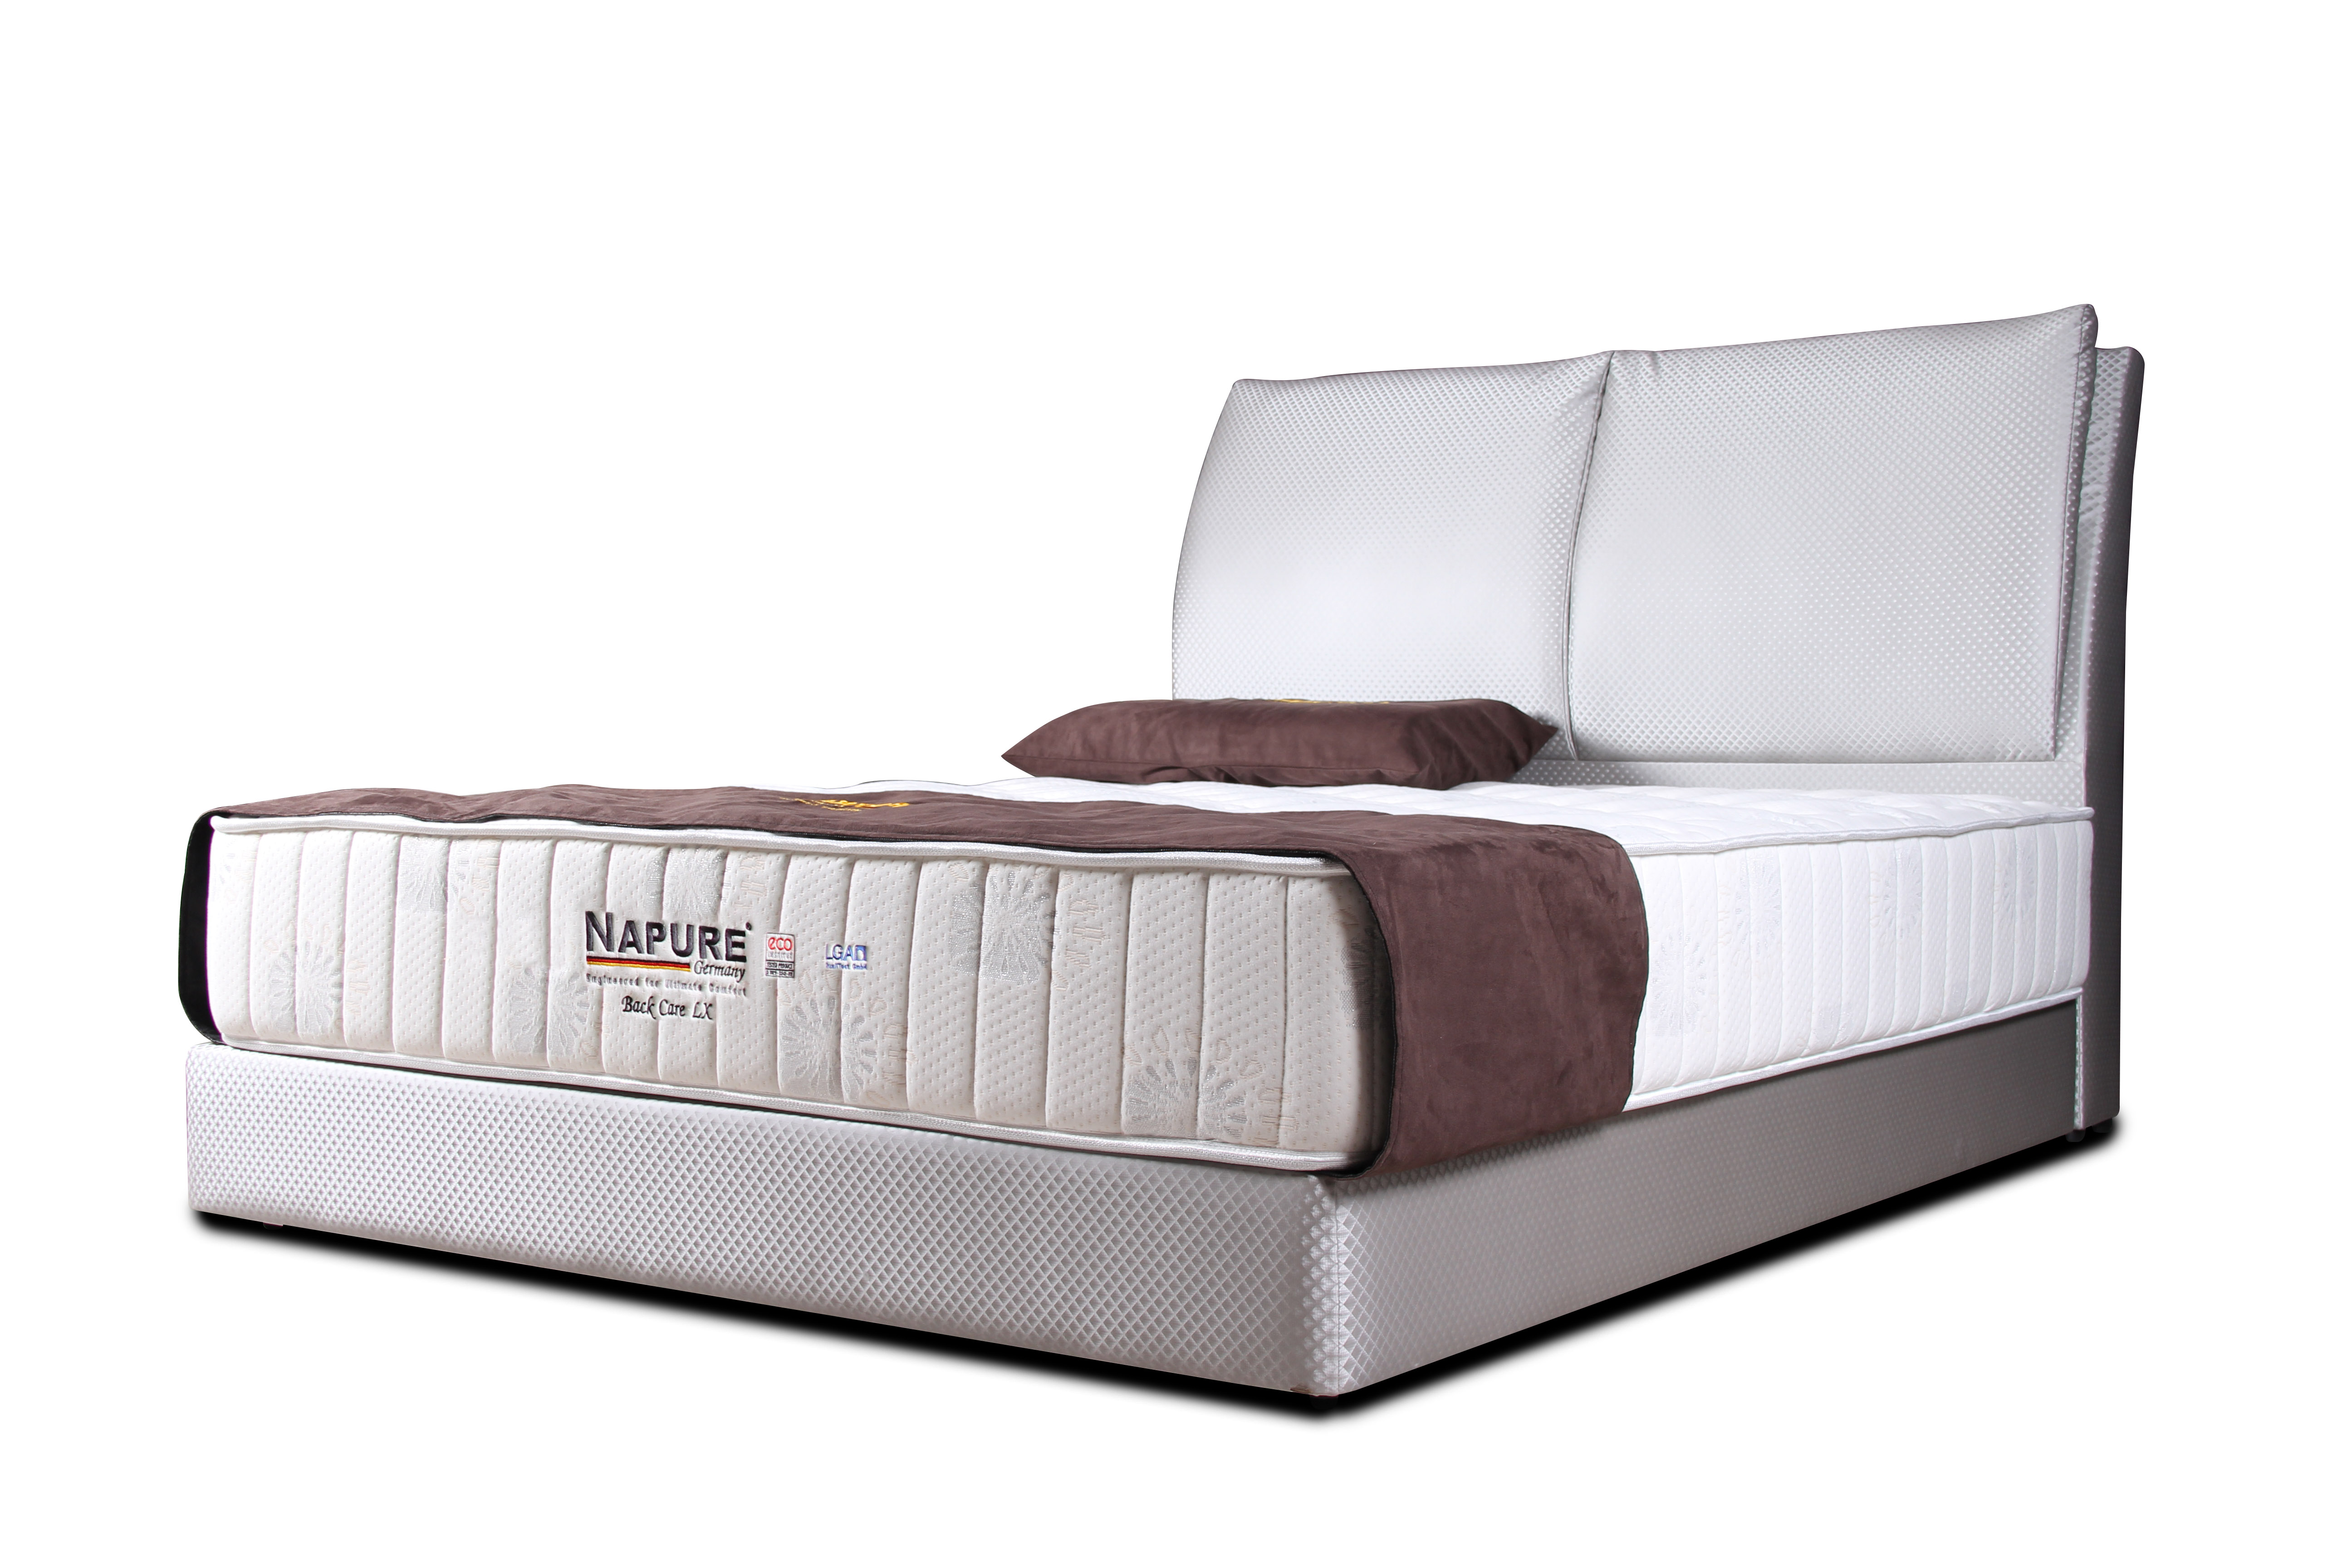 napure latex mattress price